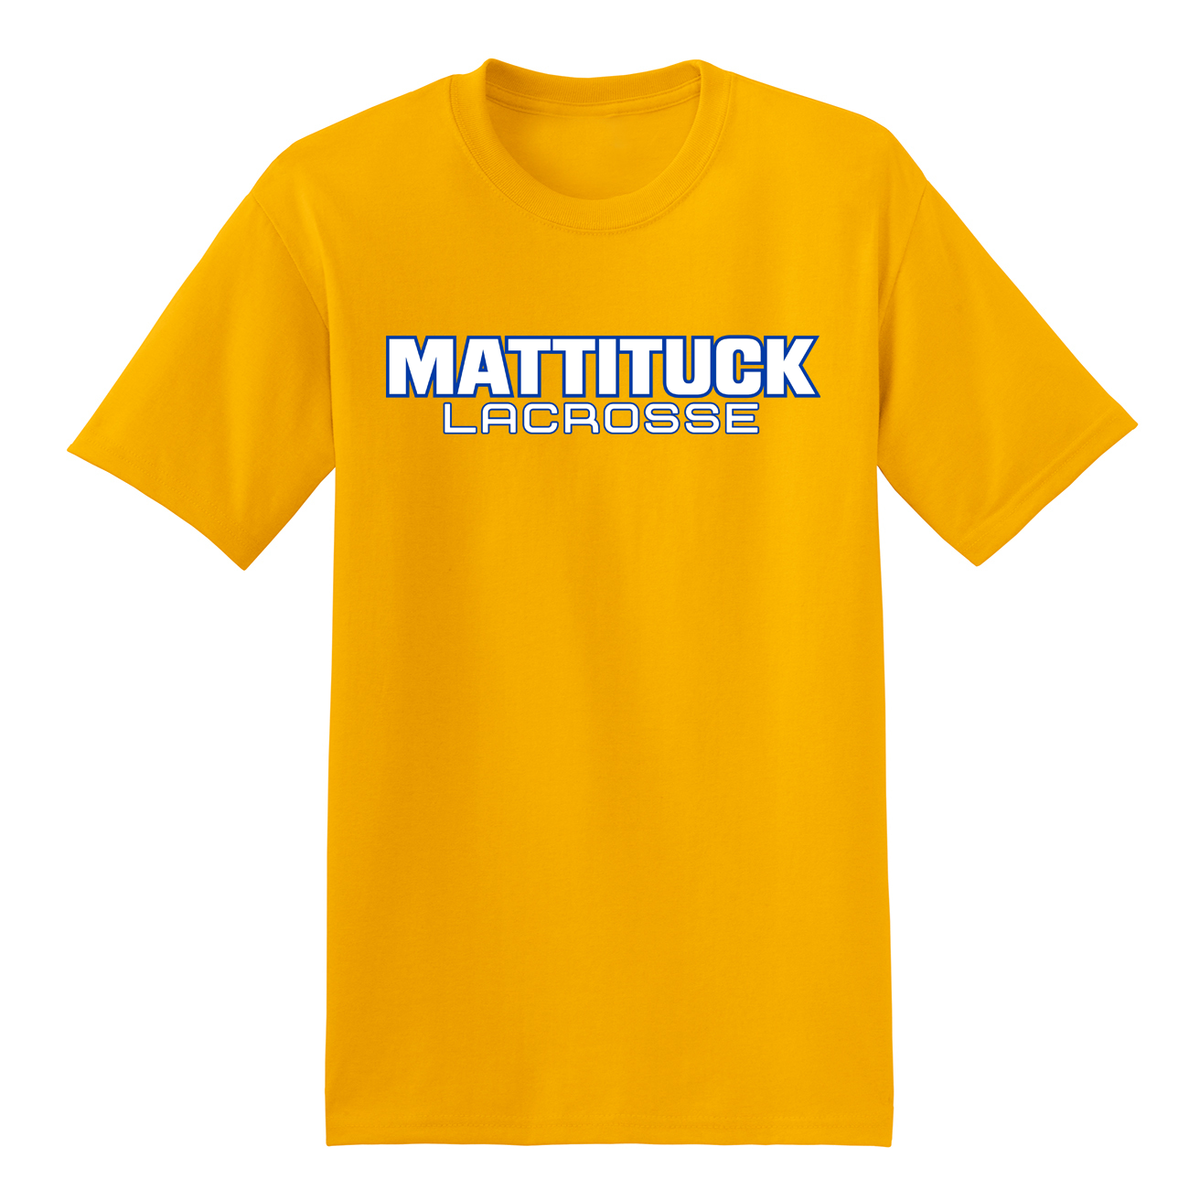 Mattituck Lacrosse T-Shirt